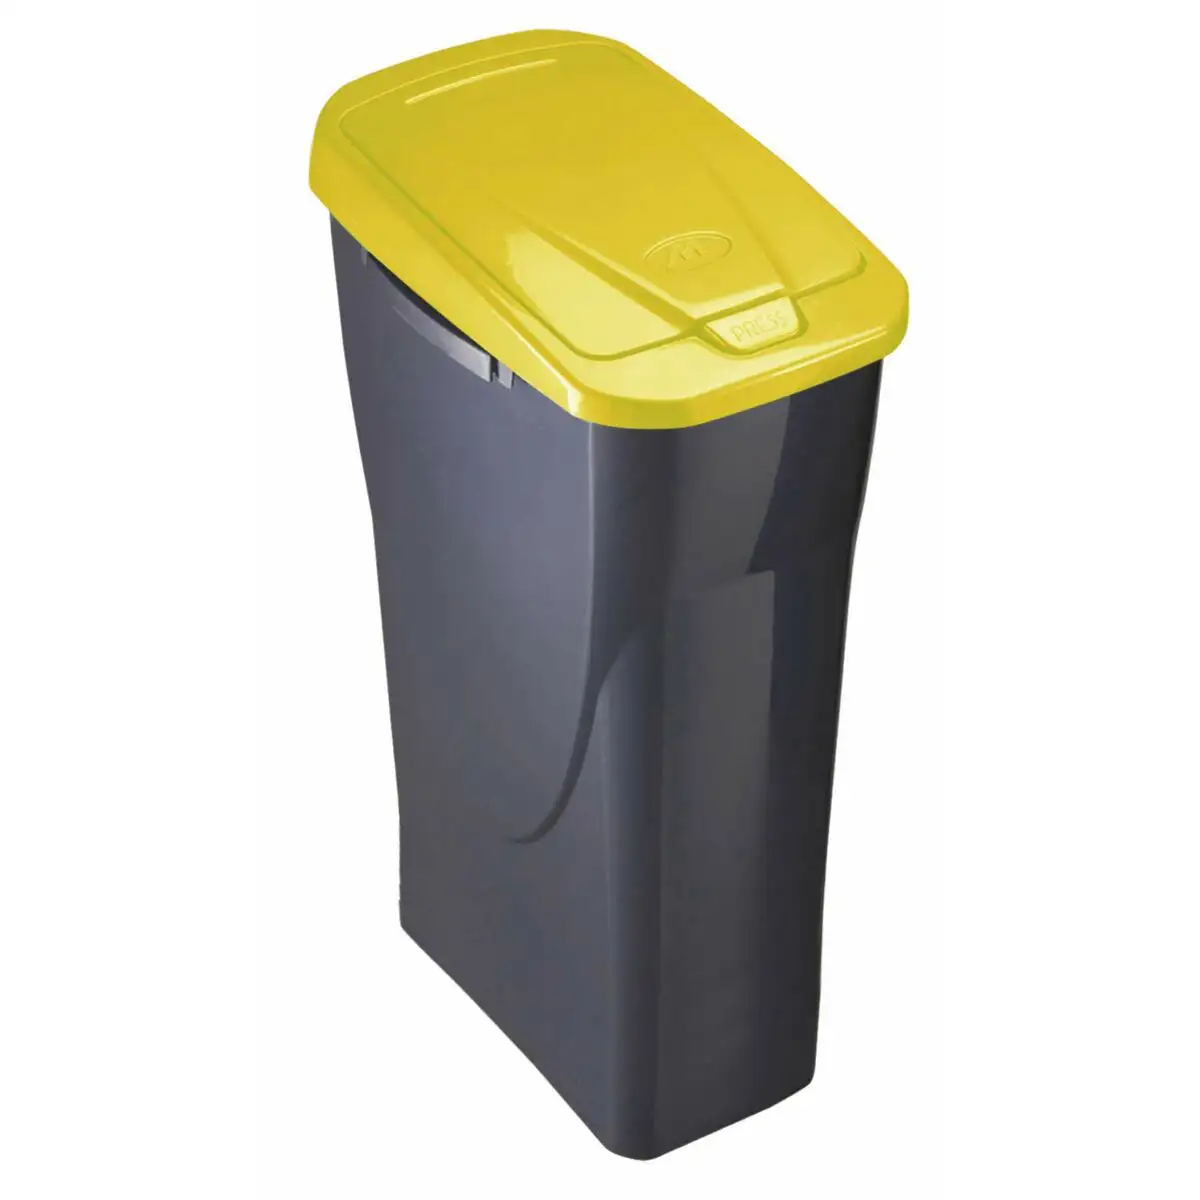 Poubelle recyclage mondex ecobin jaune avec couvercle 25 l_6445. DIAYTAR SENEGAL - Votre Source de Découvertes Shopping. Découvrez des trésors dans notre boutique en ligne, allant des articles artisanaux aux innovations modernes.